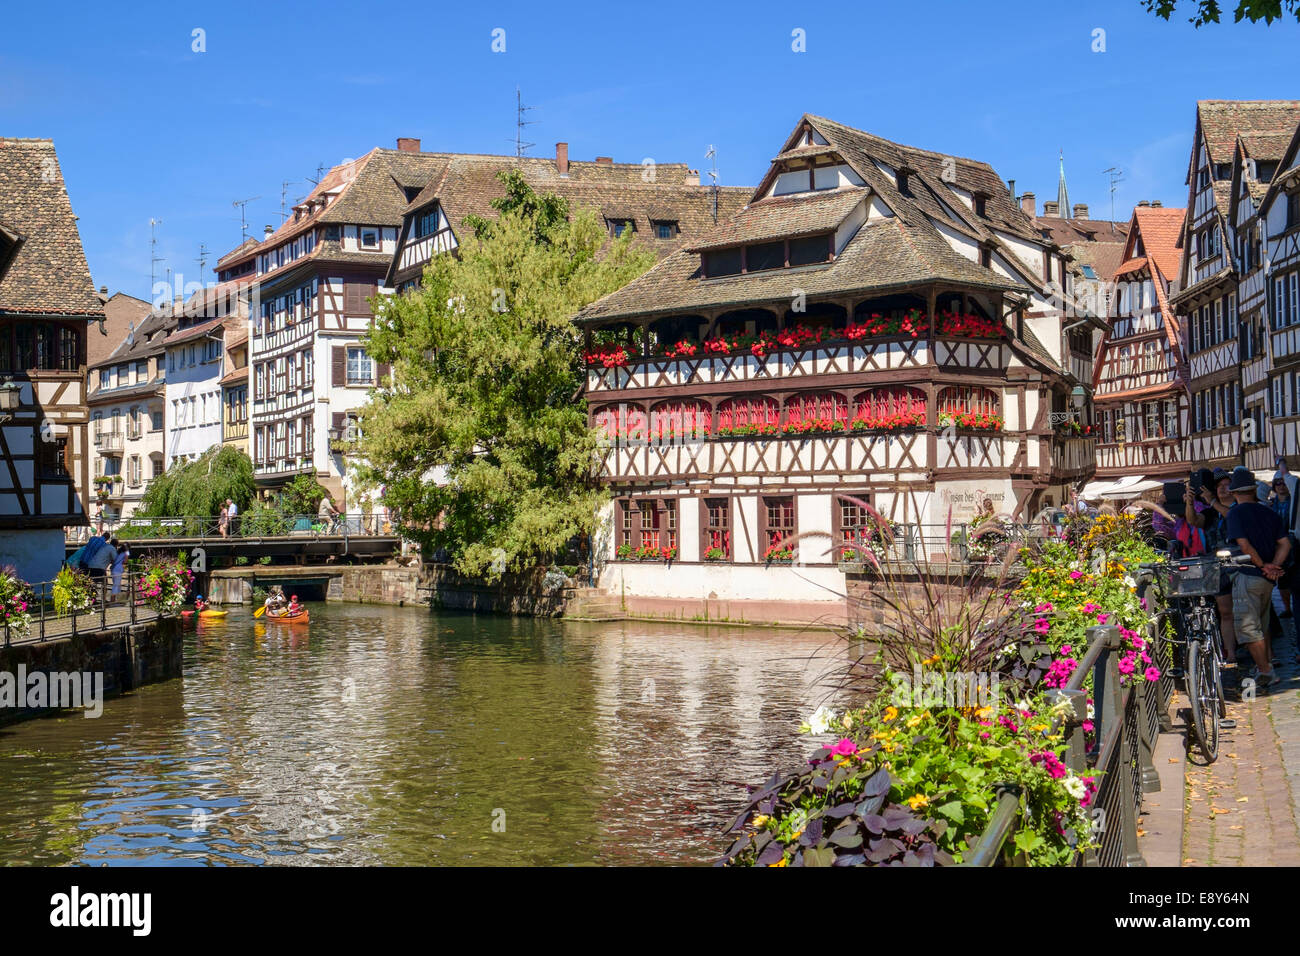 Strasbourg, France, Europe - beaux bâtiments médiévaux dans la Petite France au bord de l'eau Banque D'Images